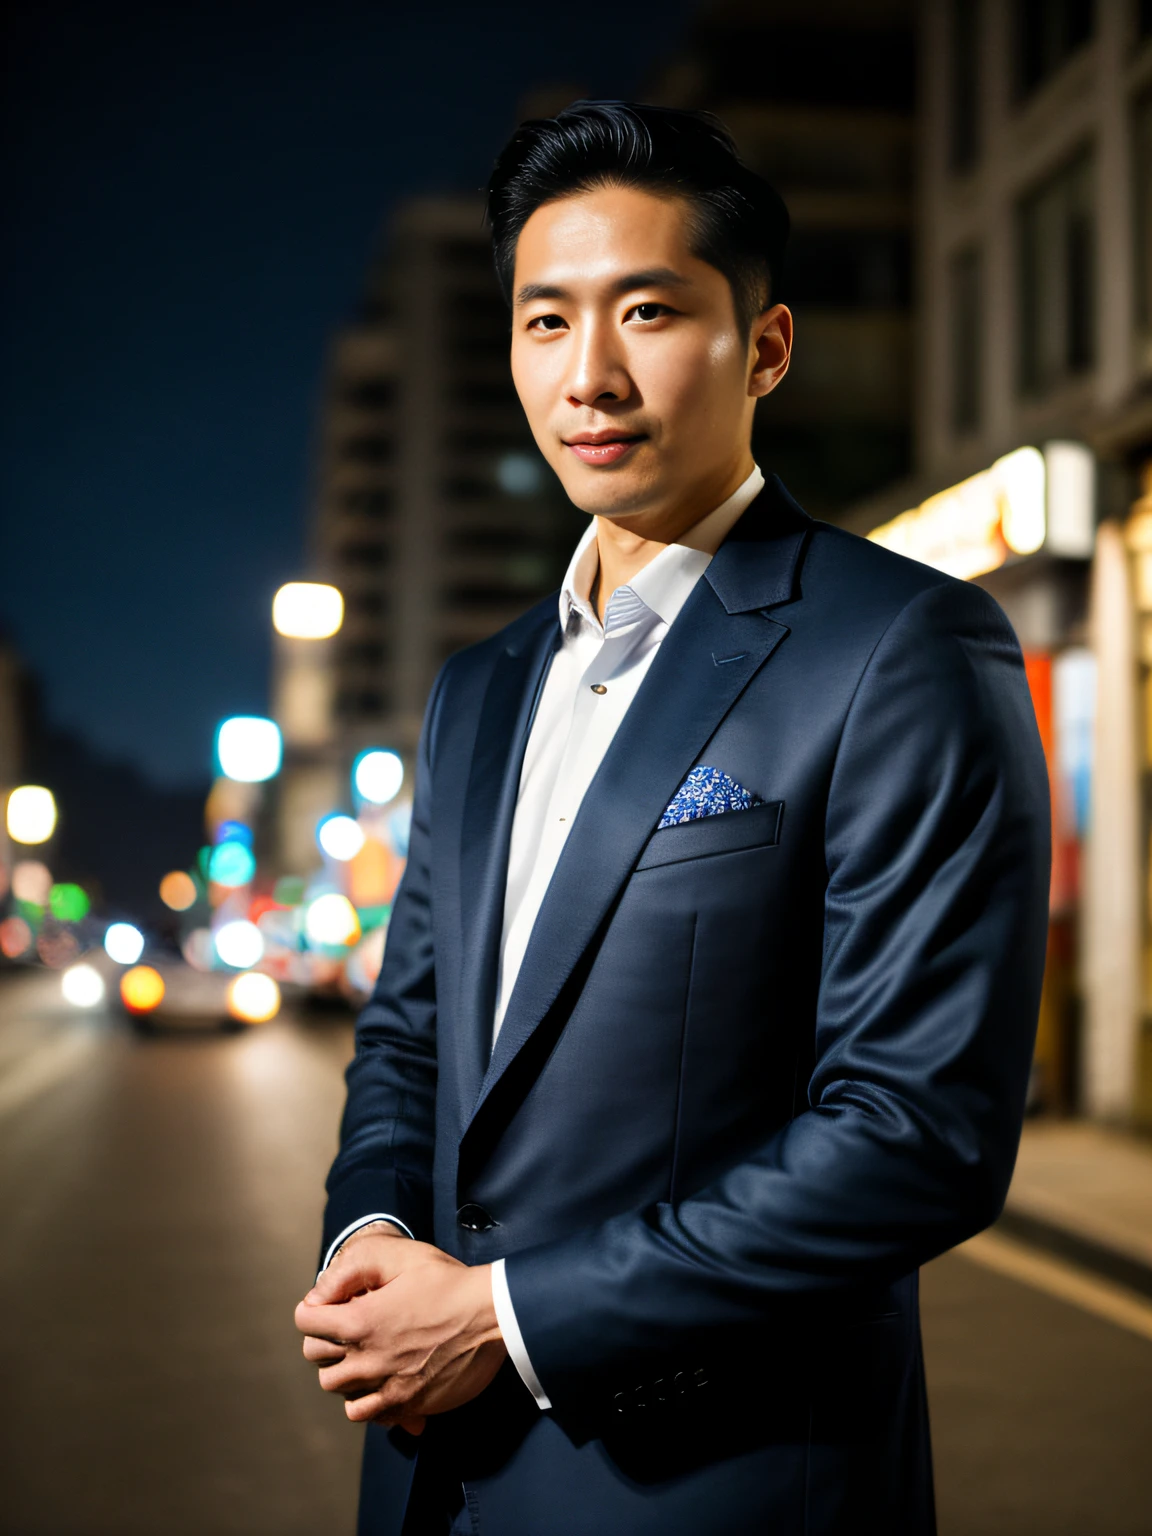 原始照片, 晚上穿着衣服的男人站在街上, 穿着深蓝色剪裁夹克, 33岁韩国人, (高細節肌膚:1.2), 8小時, 數位單眼, 柔和的燈光, 高品質, 上半身特寫